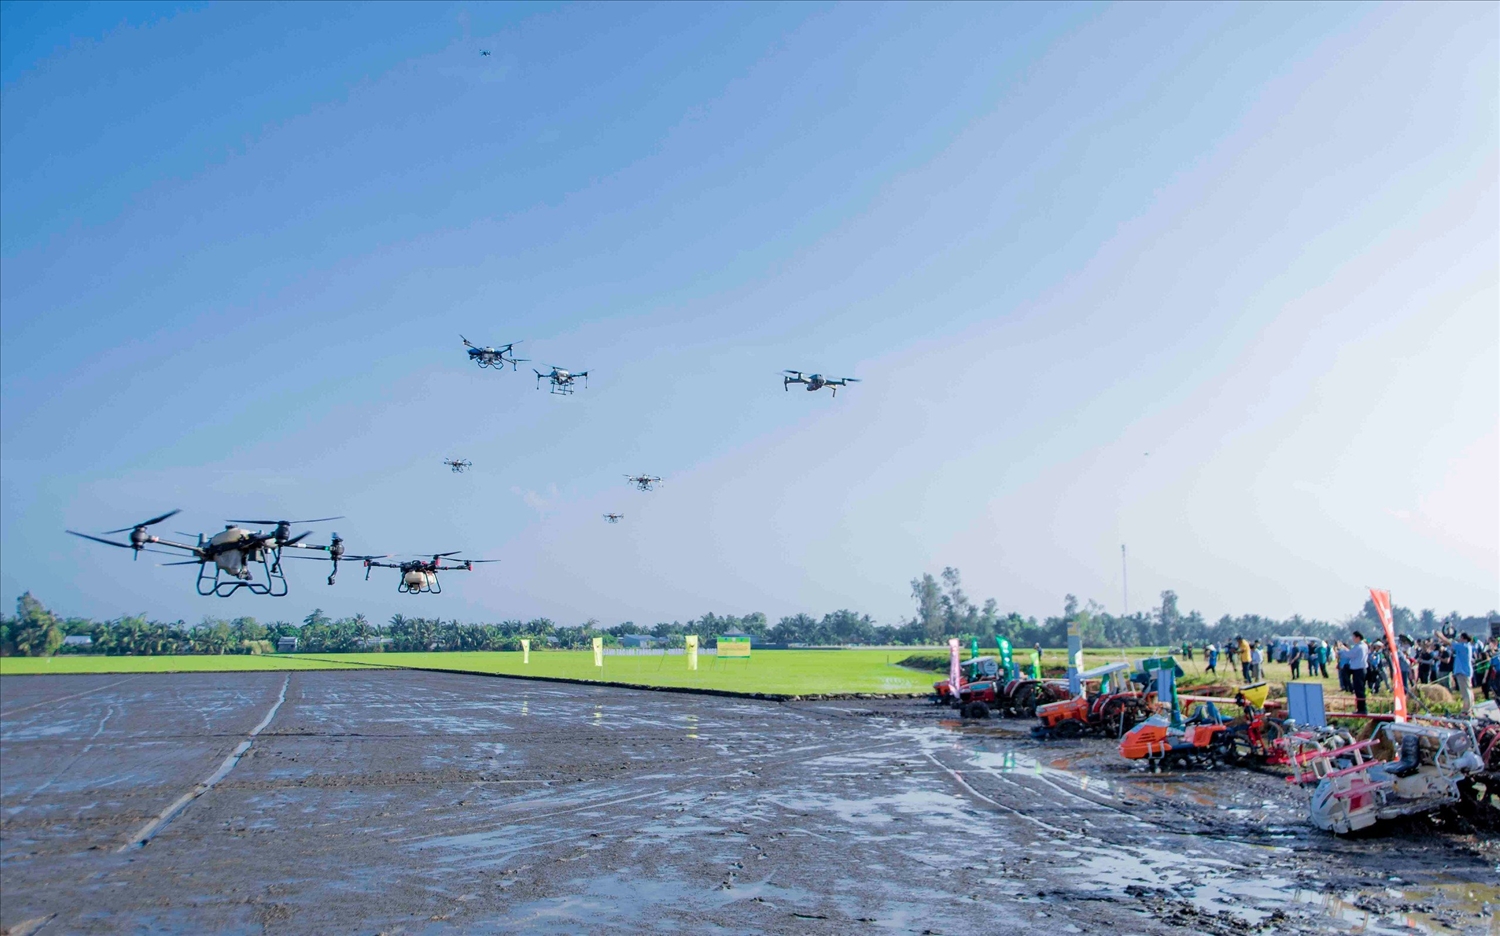 Các máy bay (Drone) sử dụng trong nông nghiệp trình diễn tại buổi lễ